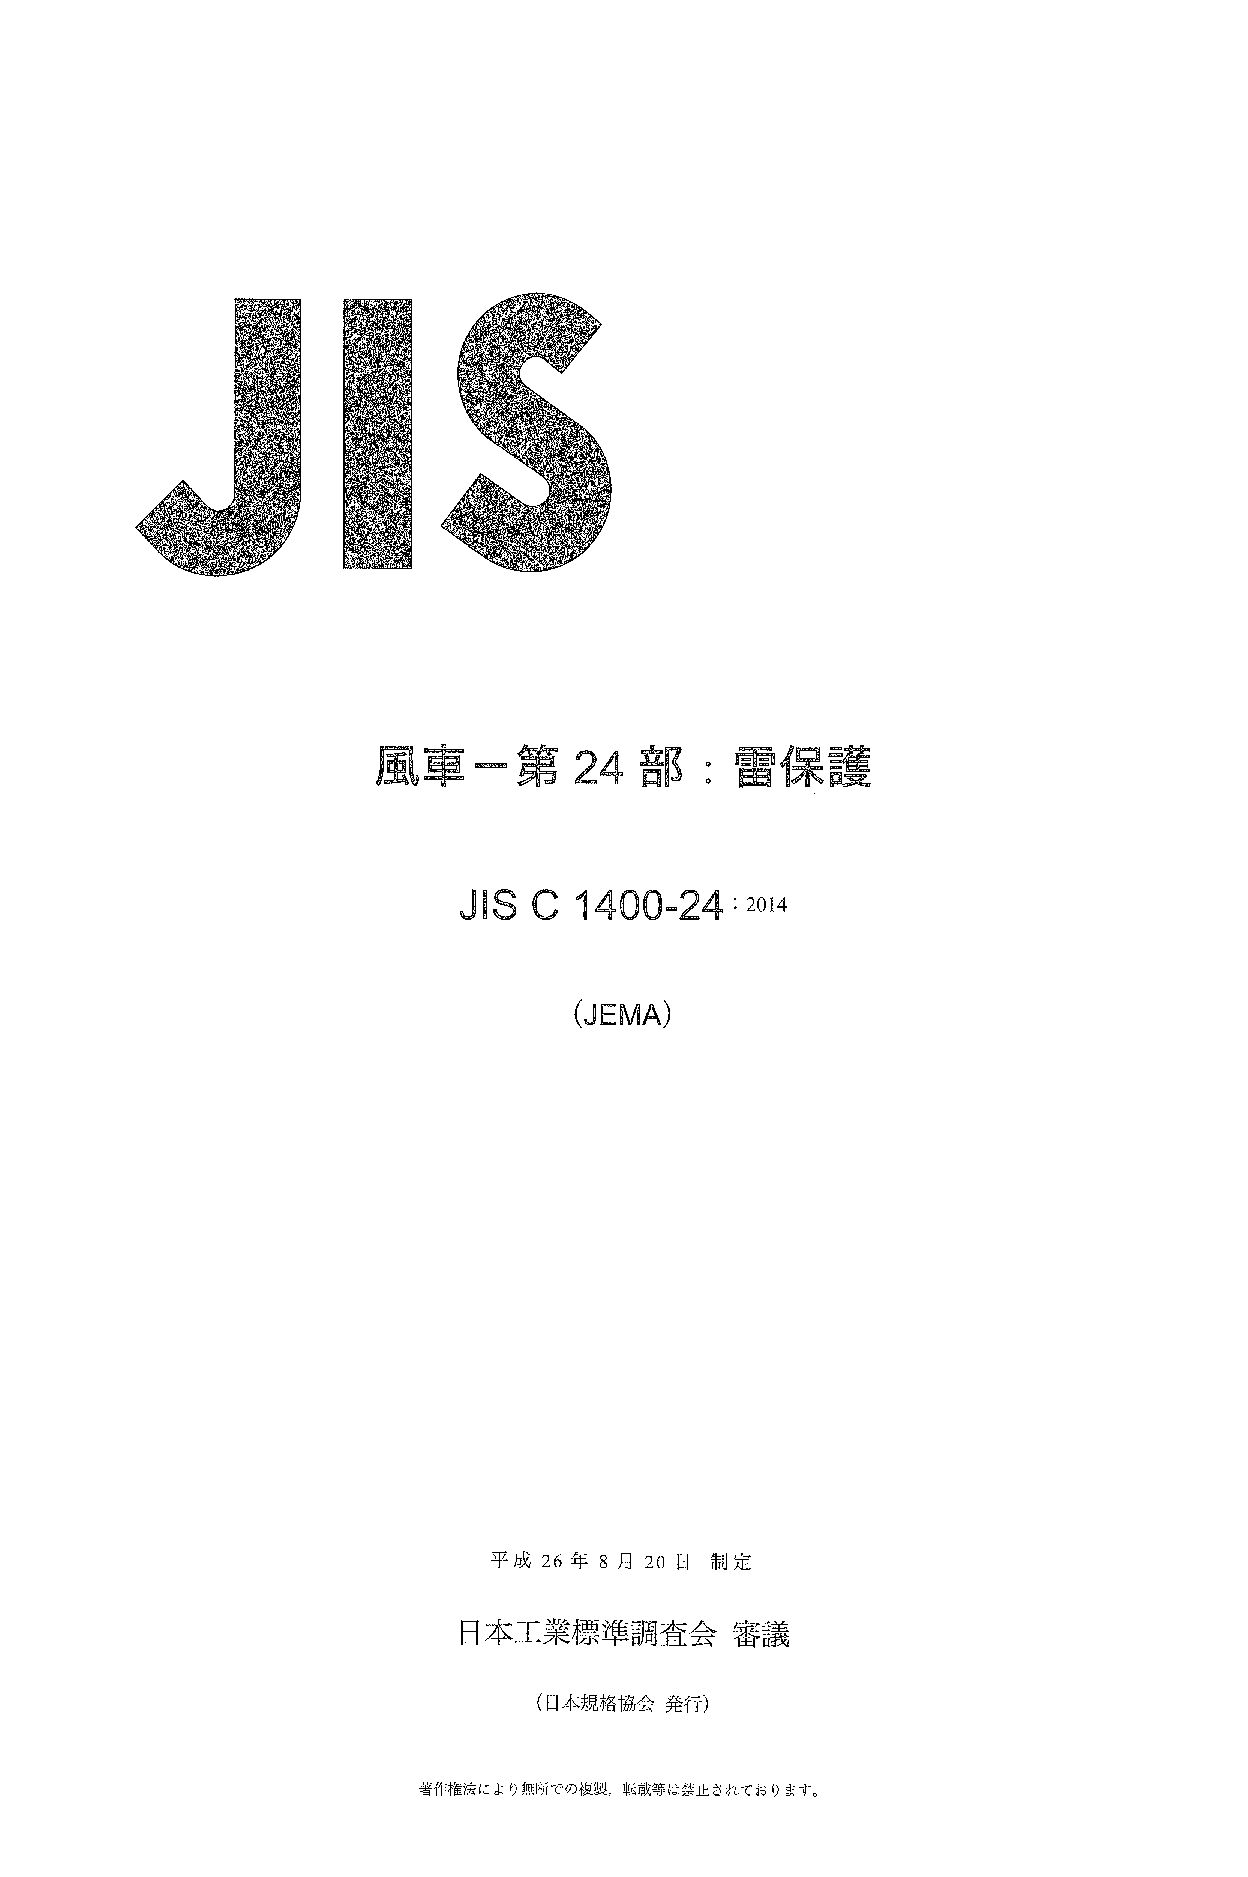 JIS C 1400-24:2014封面图